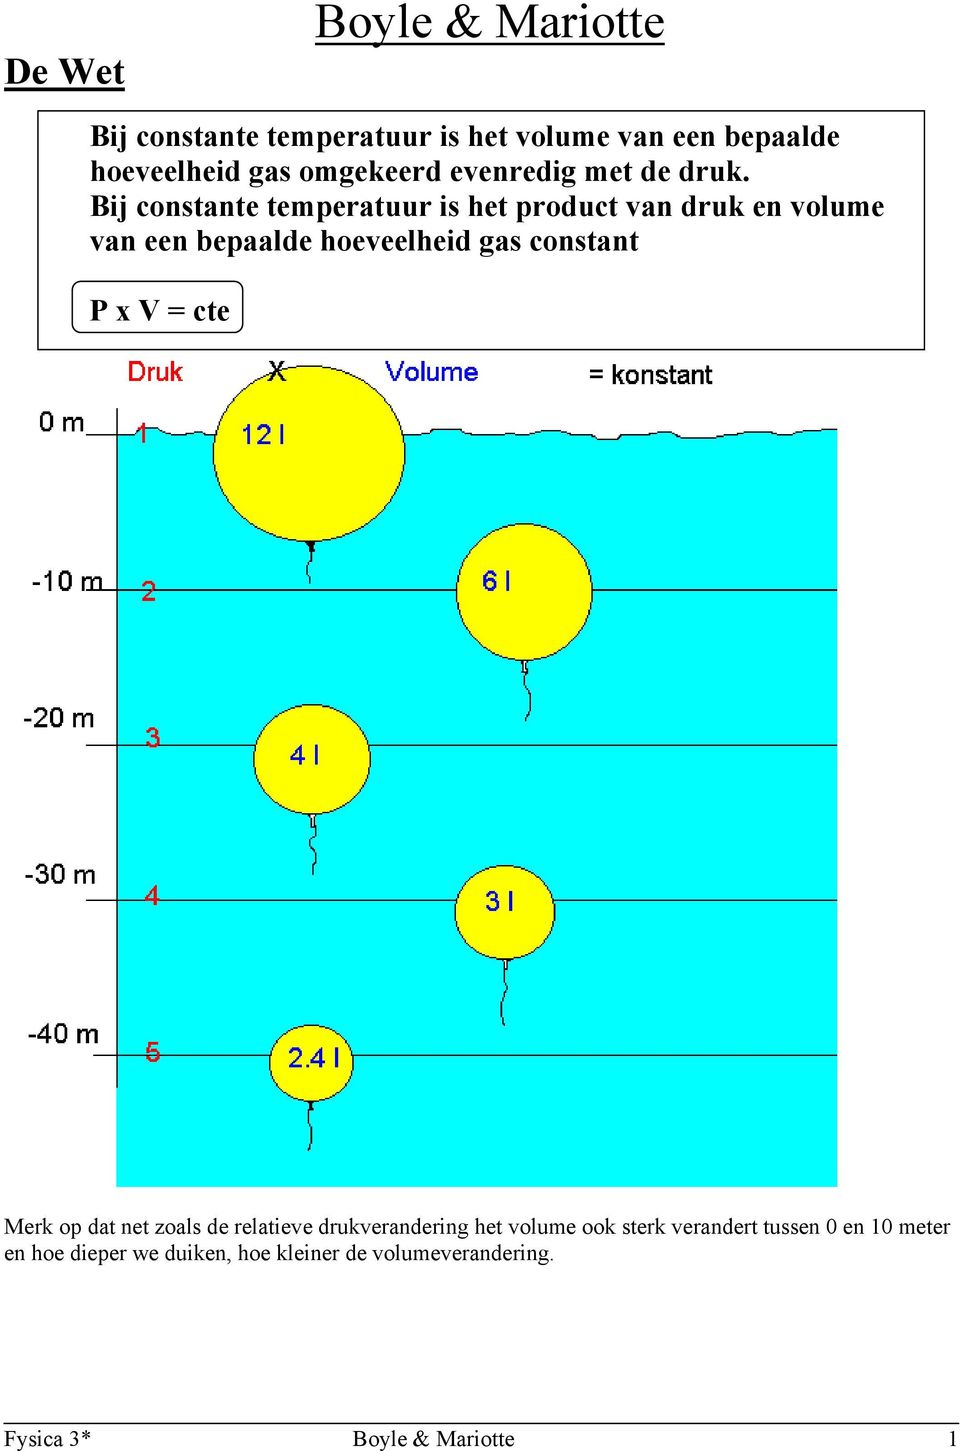 Bij constante temperatuur is het product van druk en volume van een bepaalde hoeveelheid gas constant P x V